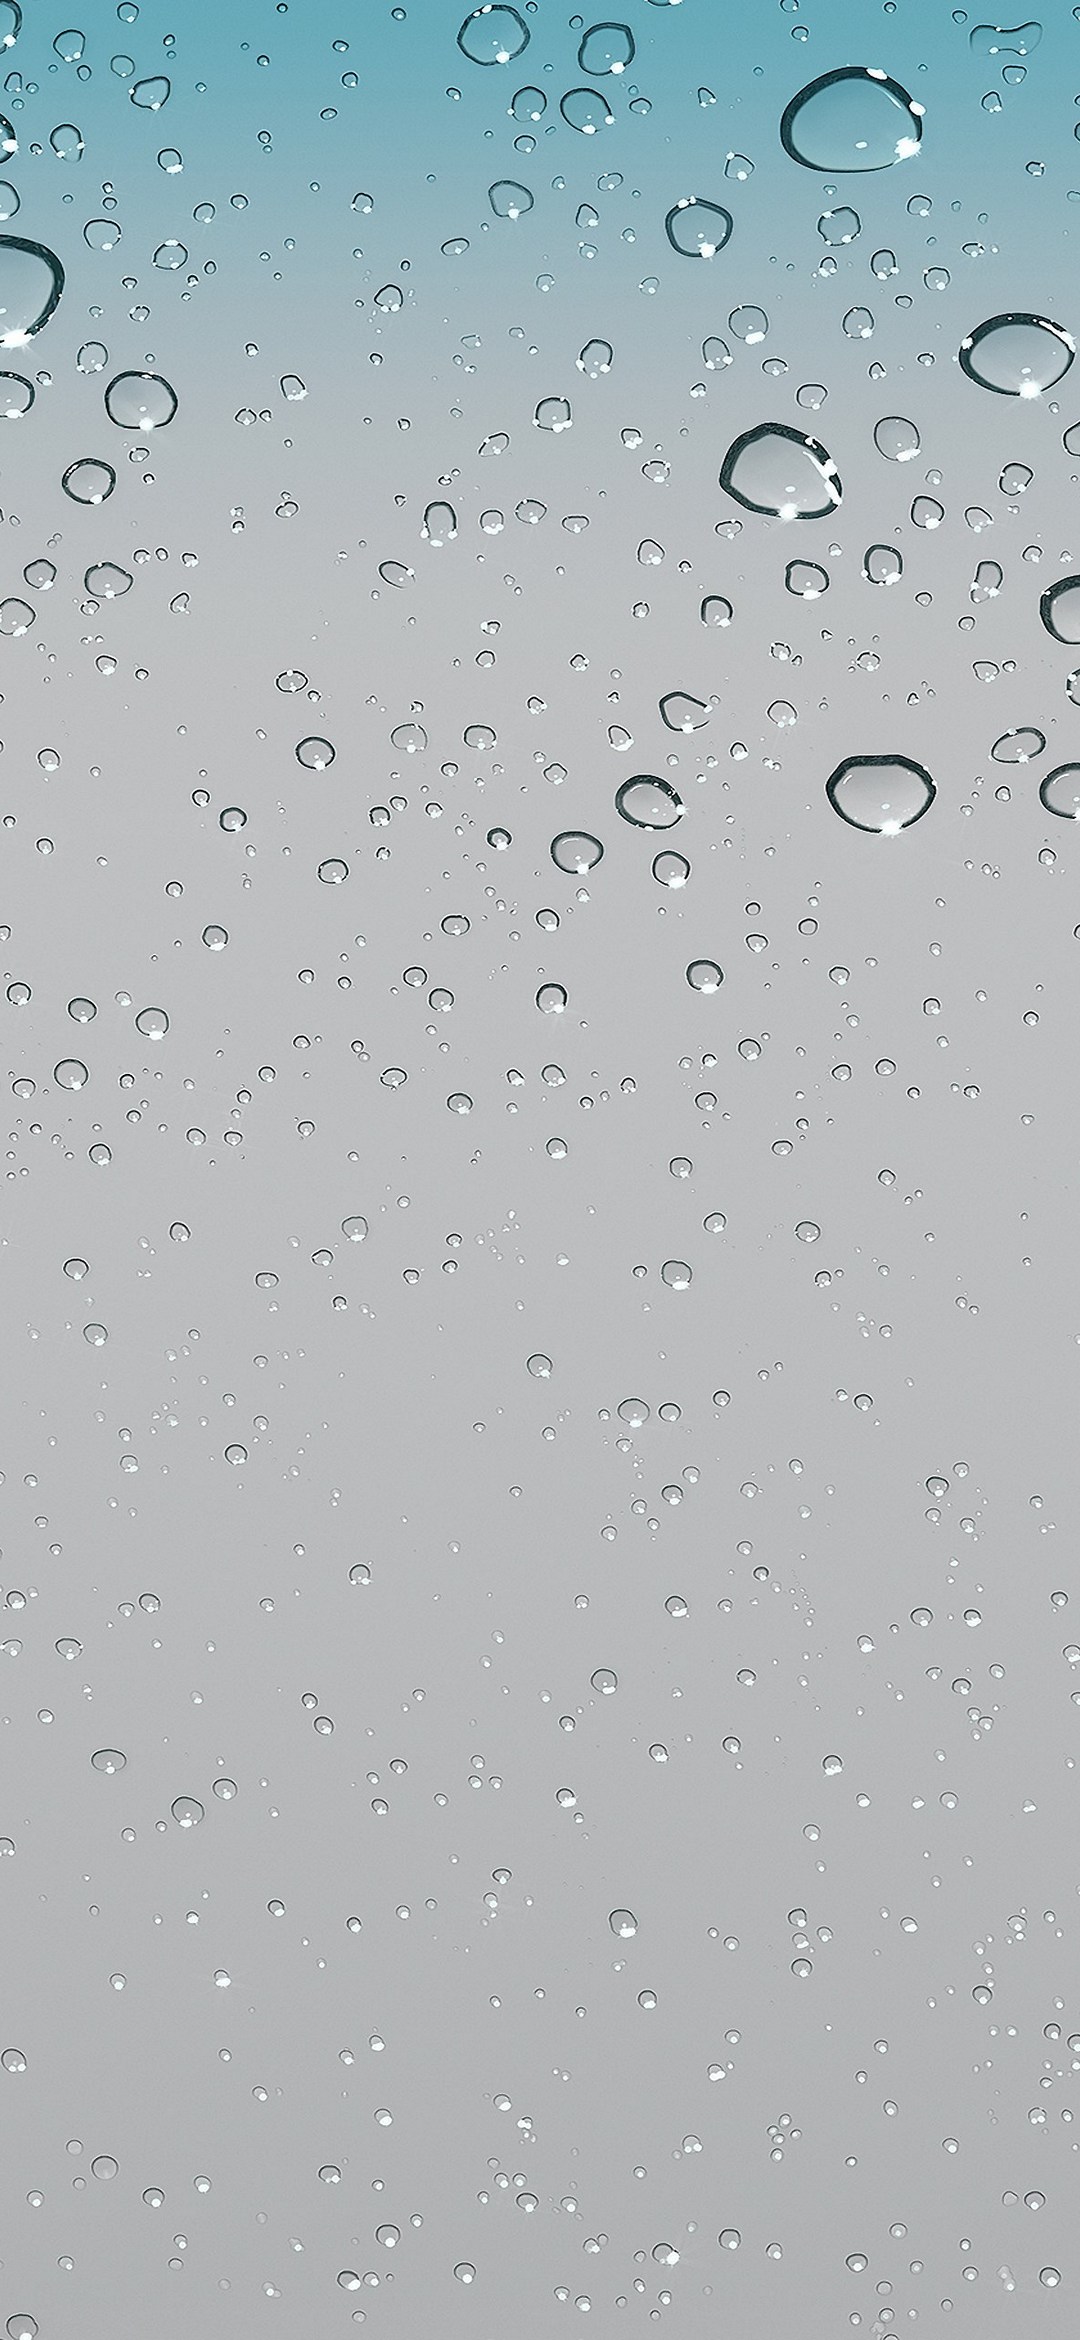 沢山の水滴がついた綺麗なガラス 水色 灰色 Rog Phone 3 Android 壁紙 待ち受け スマラン